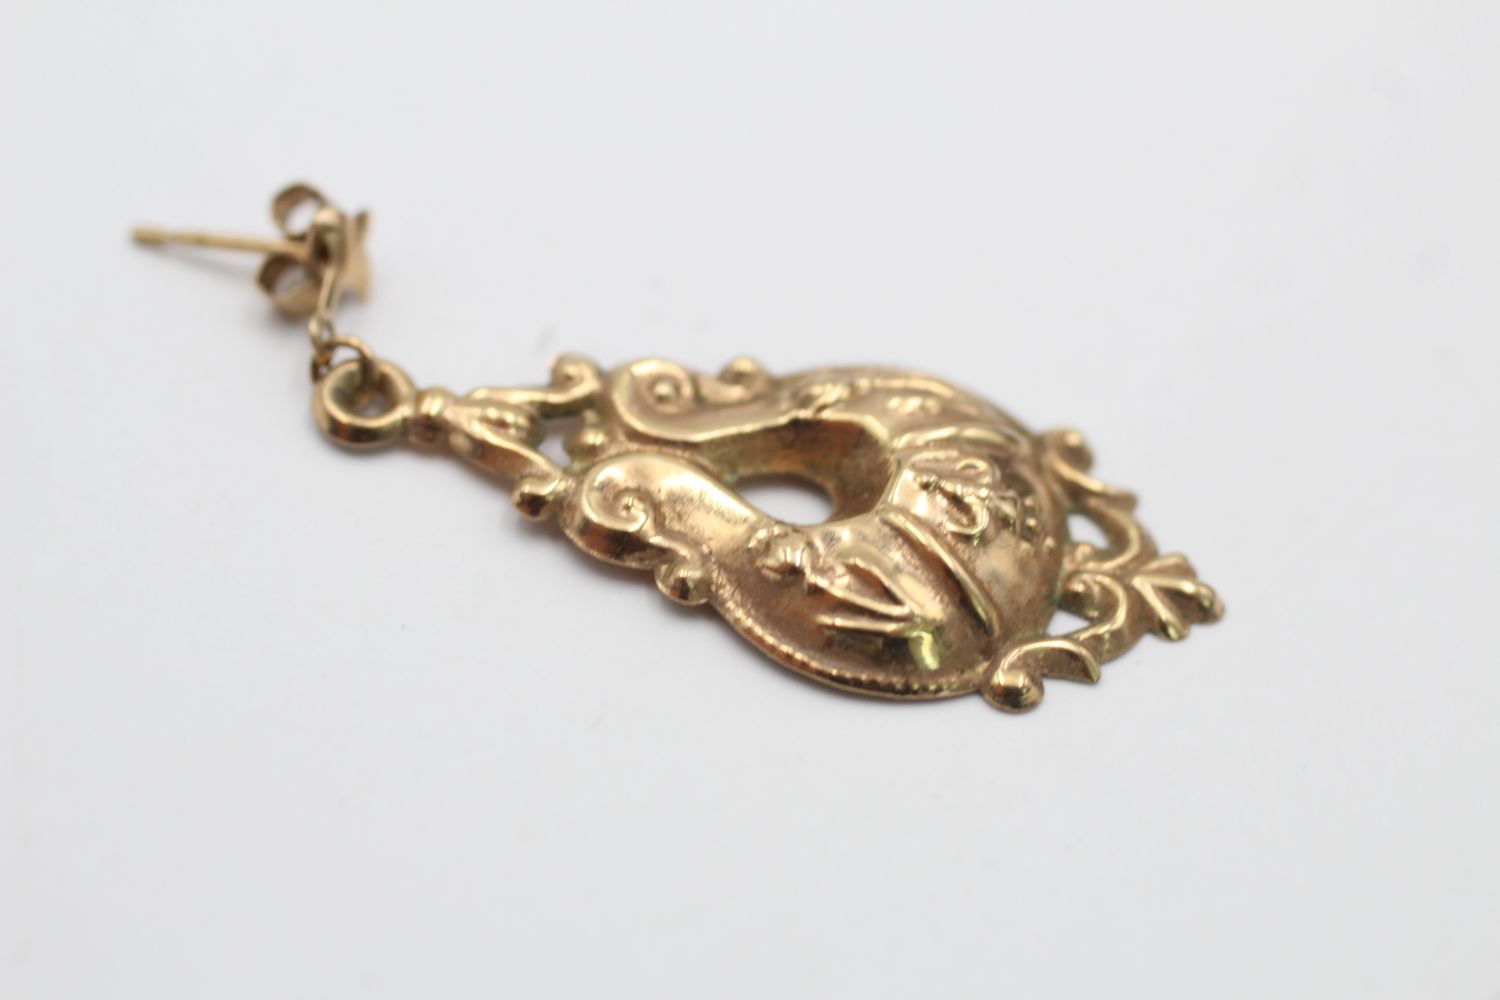 9ct gold vintage ornate openwork drop earrings (1.1g) - Image 5 of 5